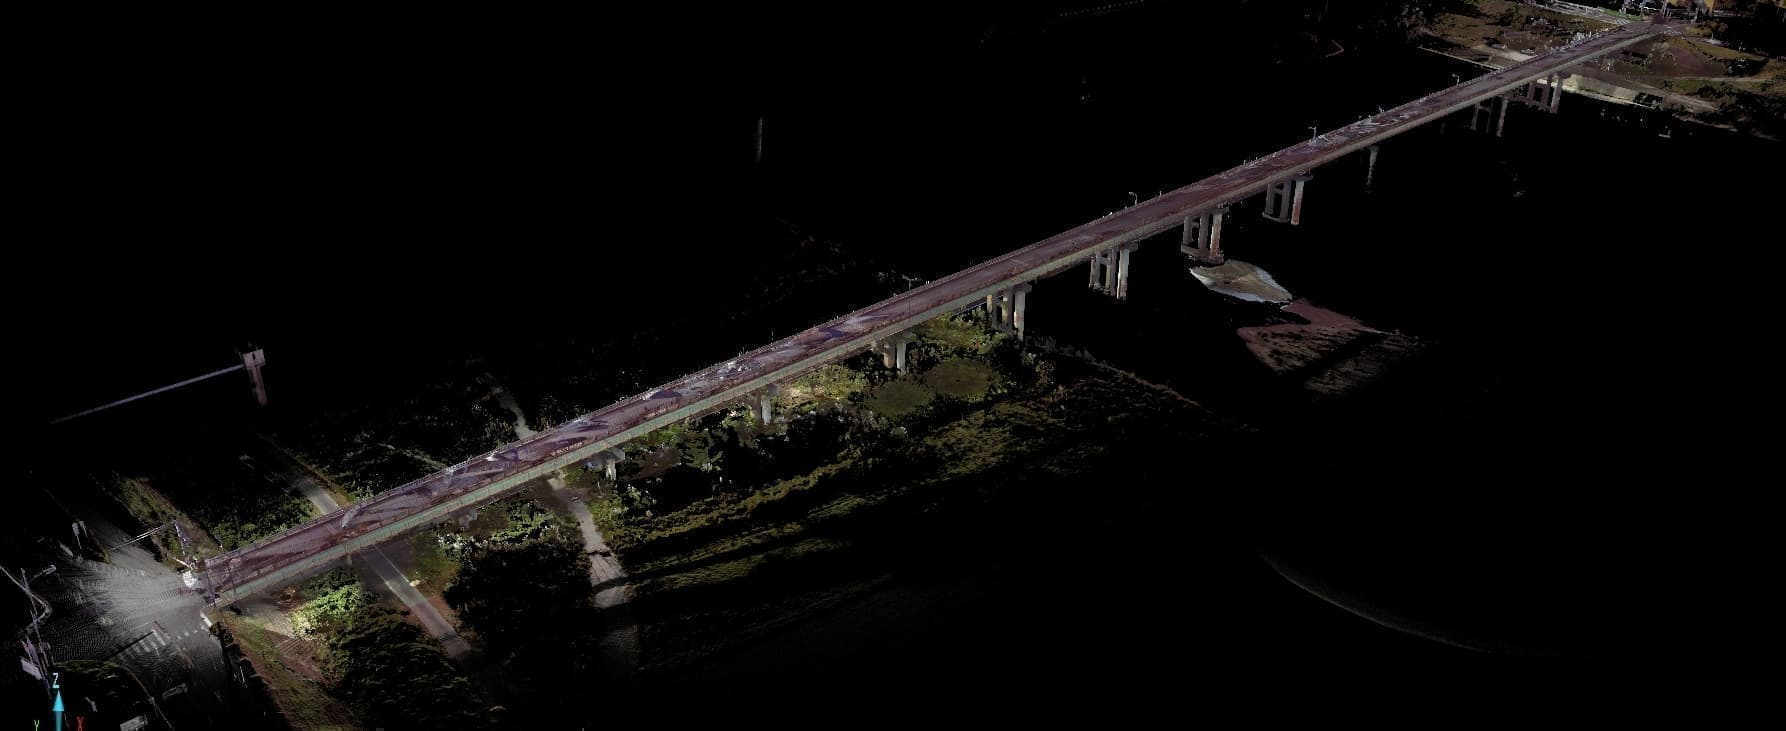 ドローンの空撮測量とレーザースキャナのデータを組み合わせた橋梁管理の手法です